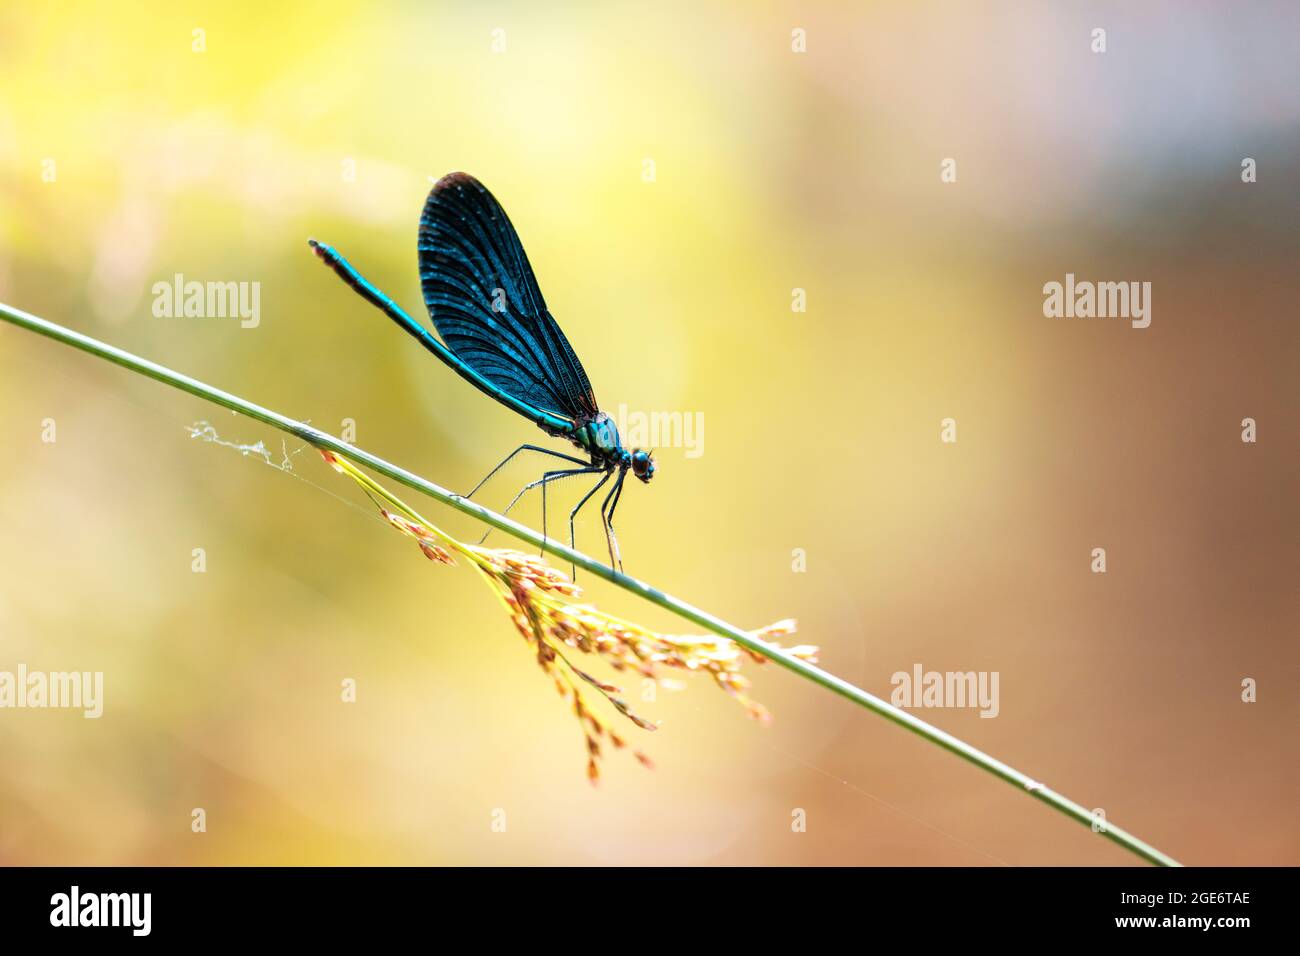 Bella scena della natura con la tenera libellula sul ramoscello verde. Fotografia macro Foto Stock